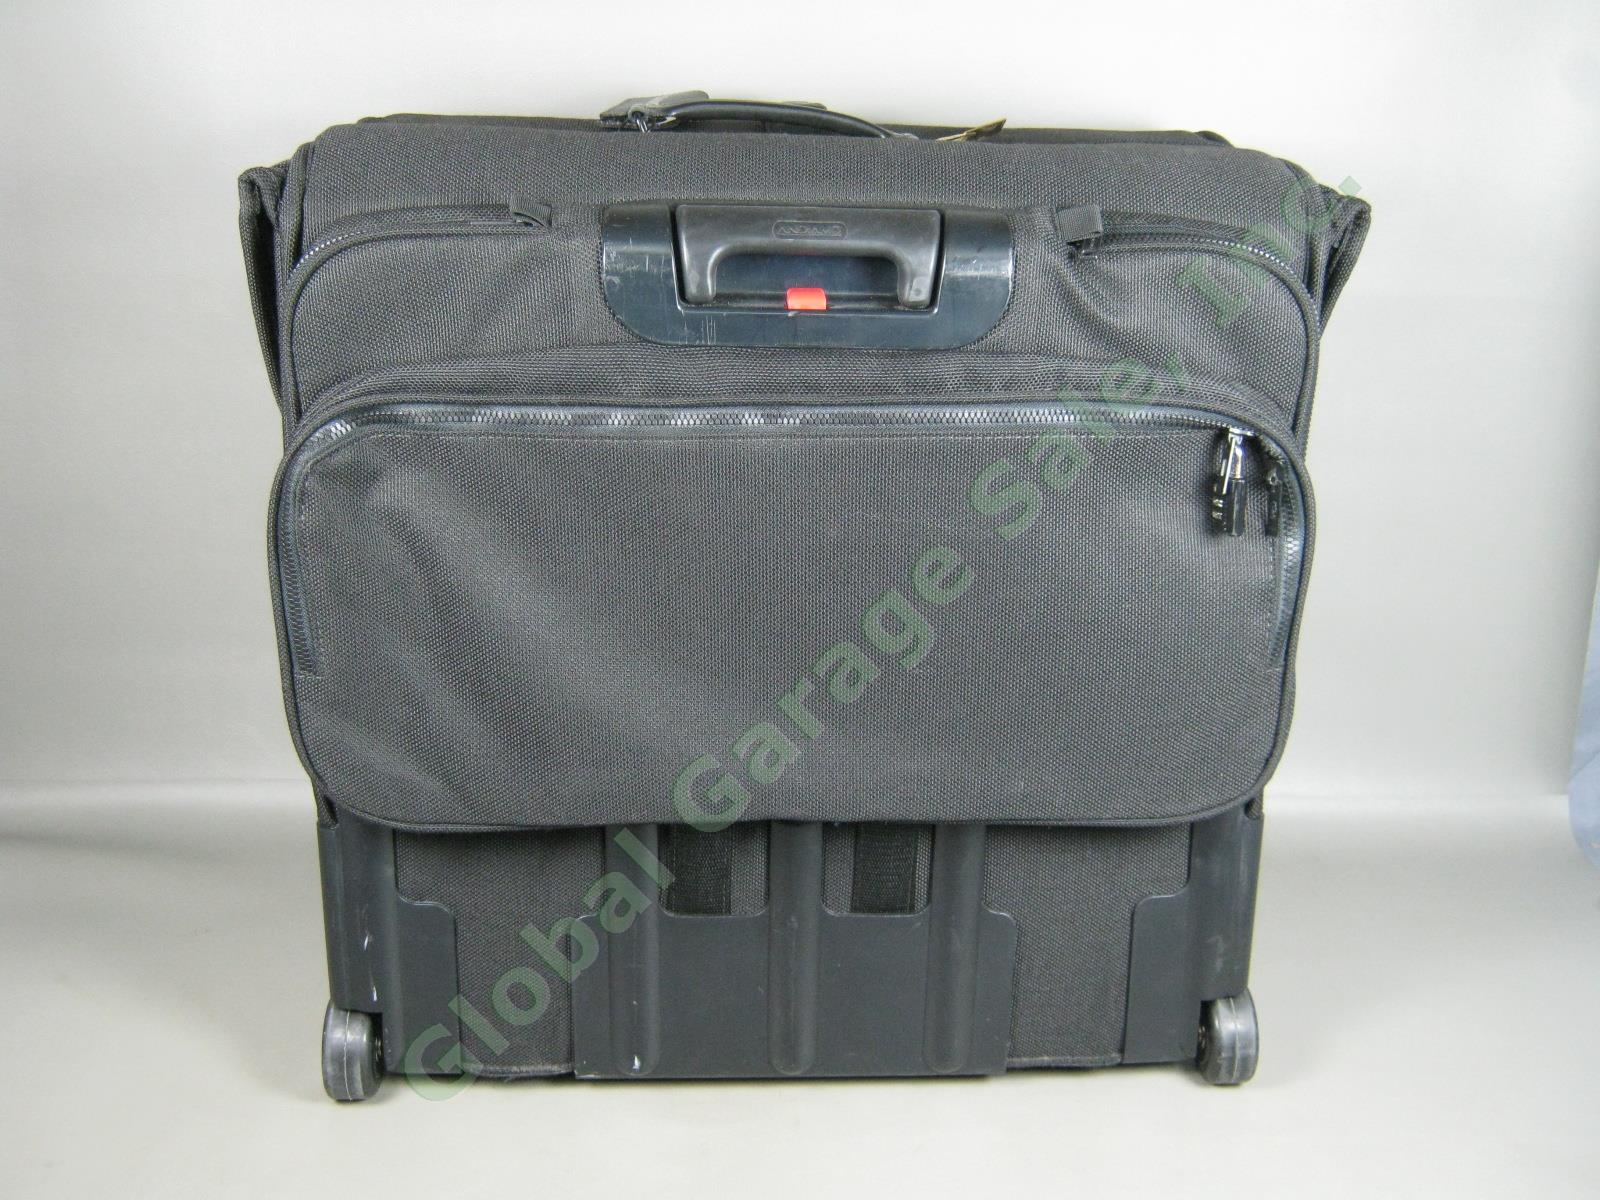 Andiamo Valoroso Wheeled Wardrobe Garment Bag Black Luggage 25x24x16 Exc Cond! 2